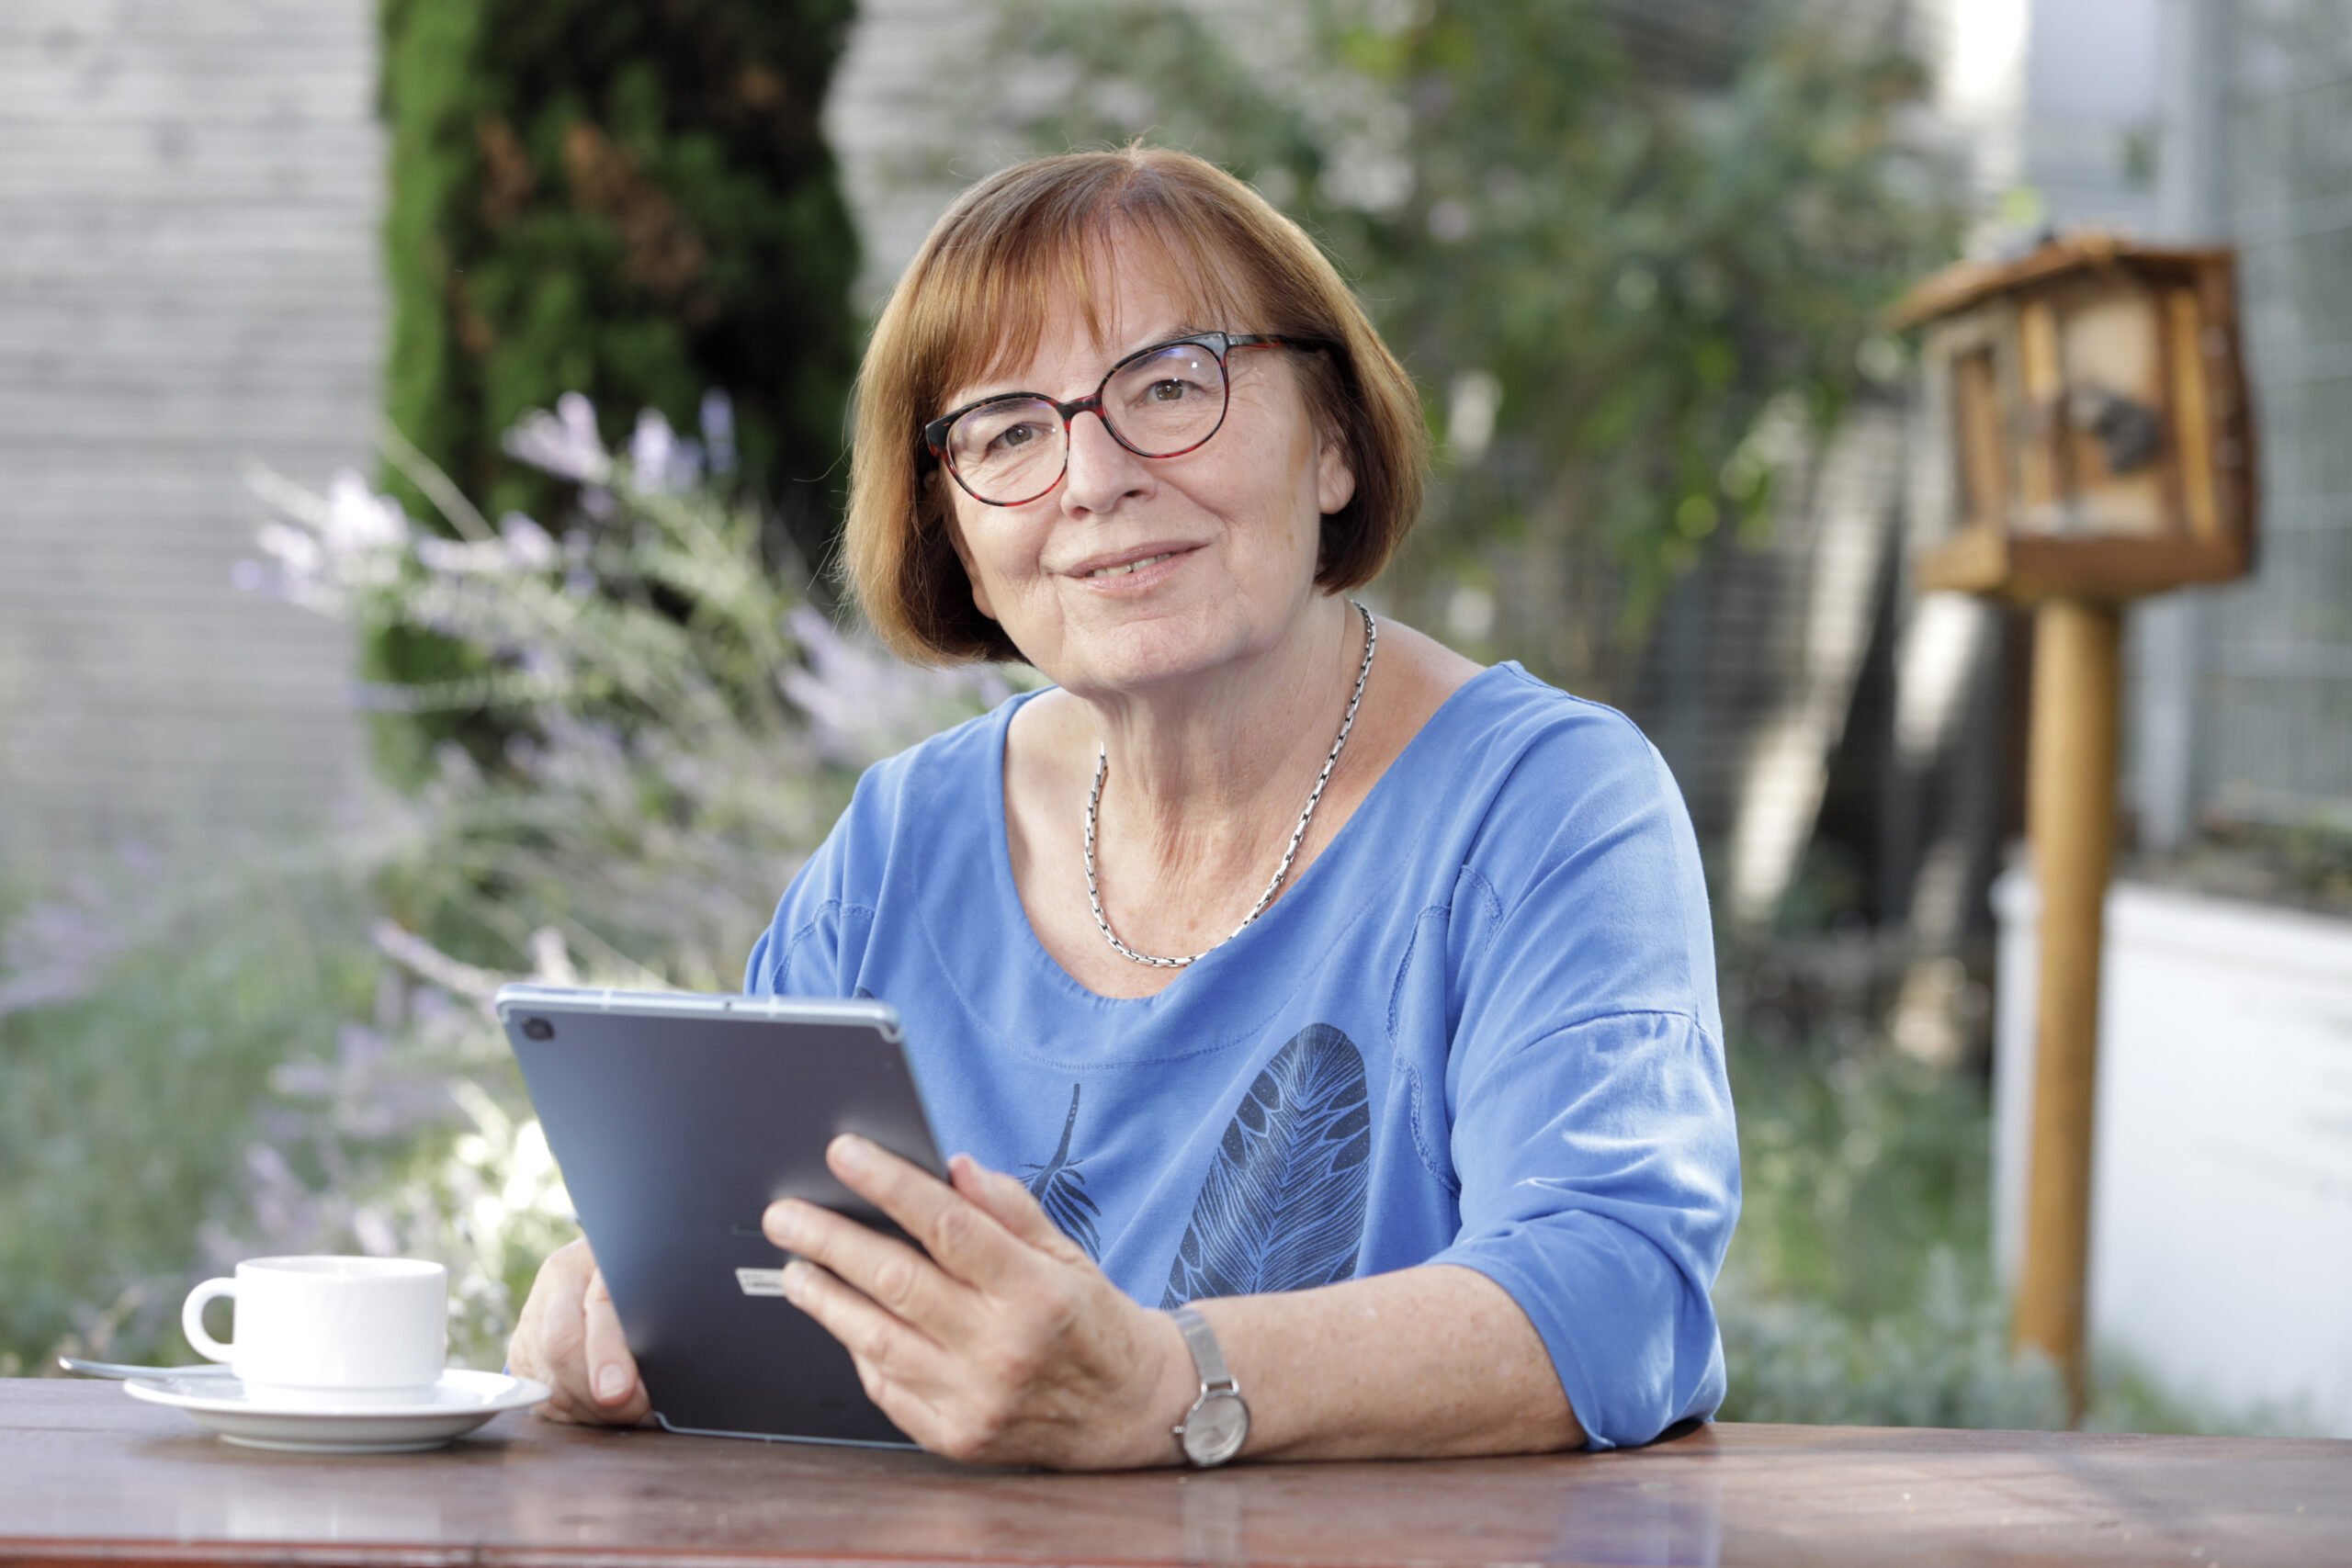 Frau sitzt mit Tablet im Garten an einem Tisch und lächelt in die Kamera